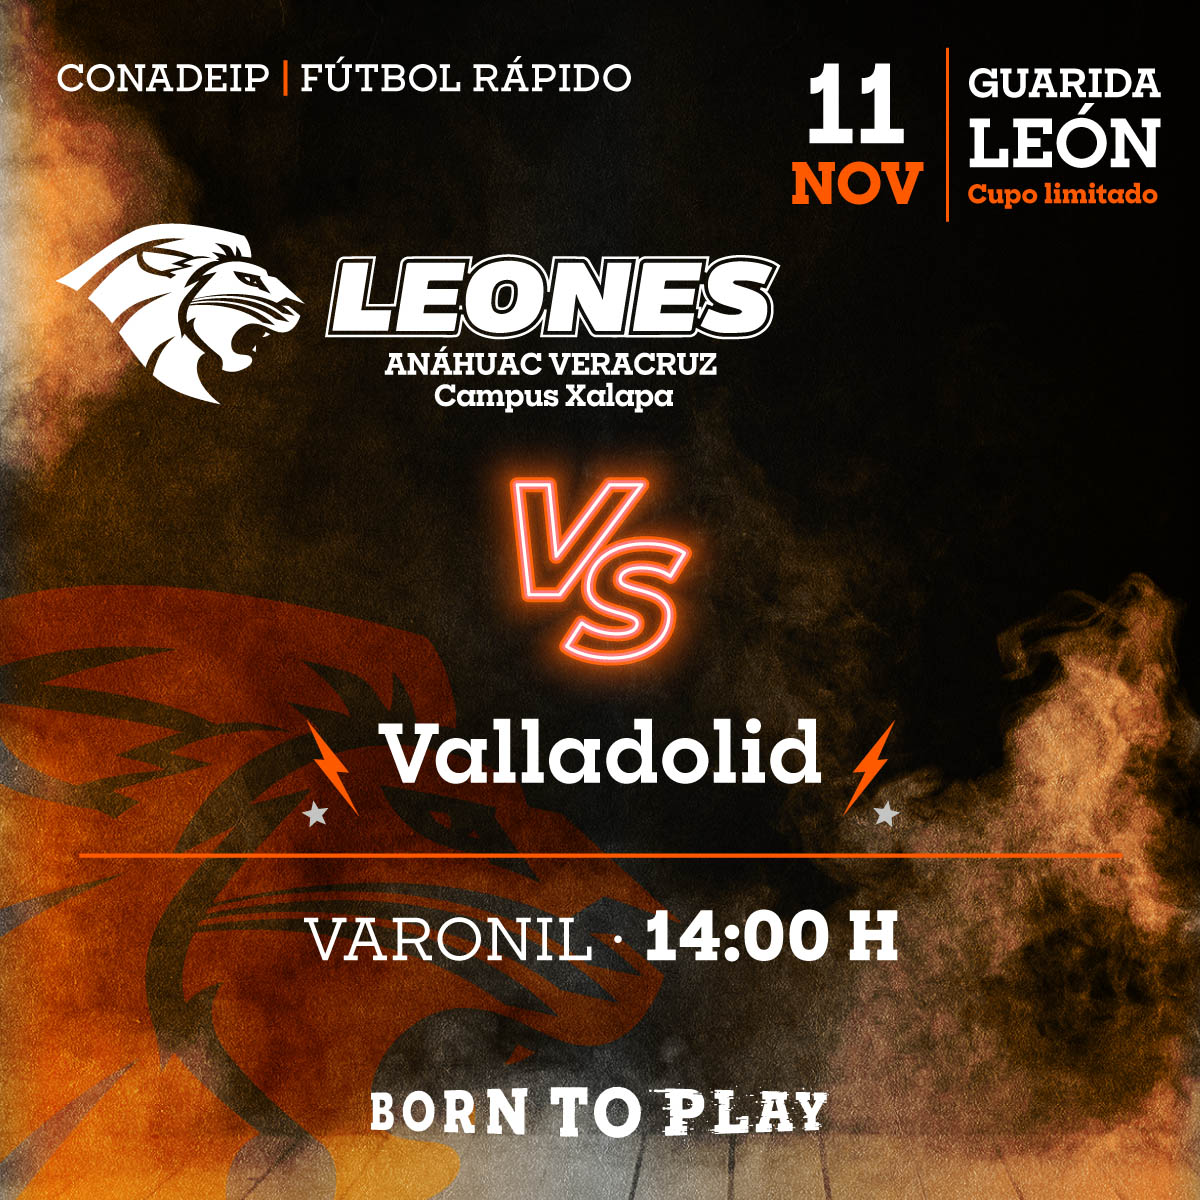 Fútbol Rápido Varonil: Leones vs Valladolid